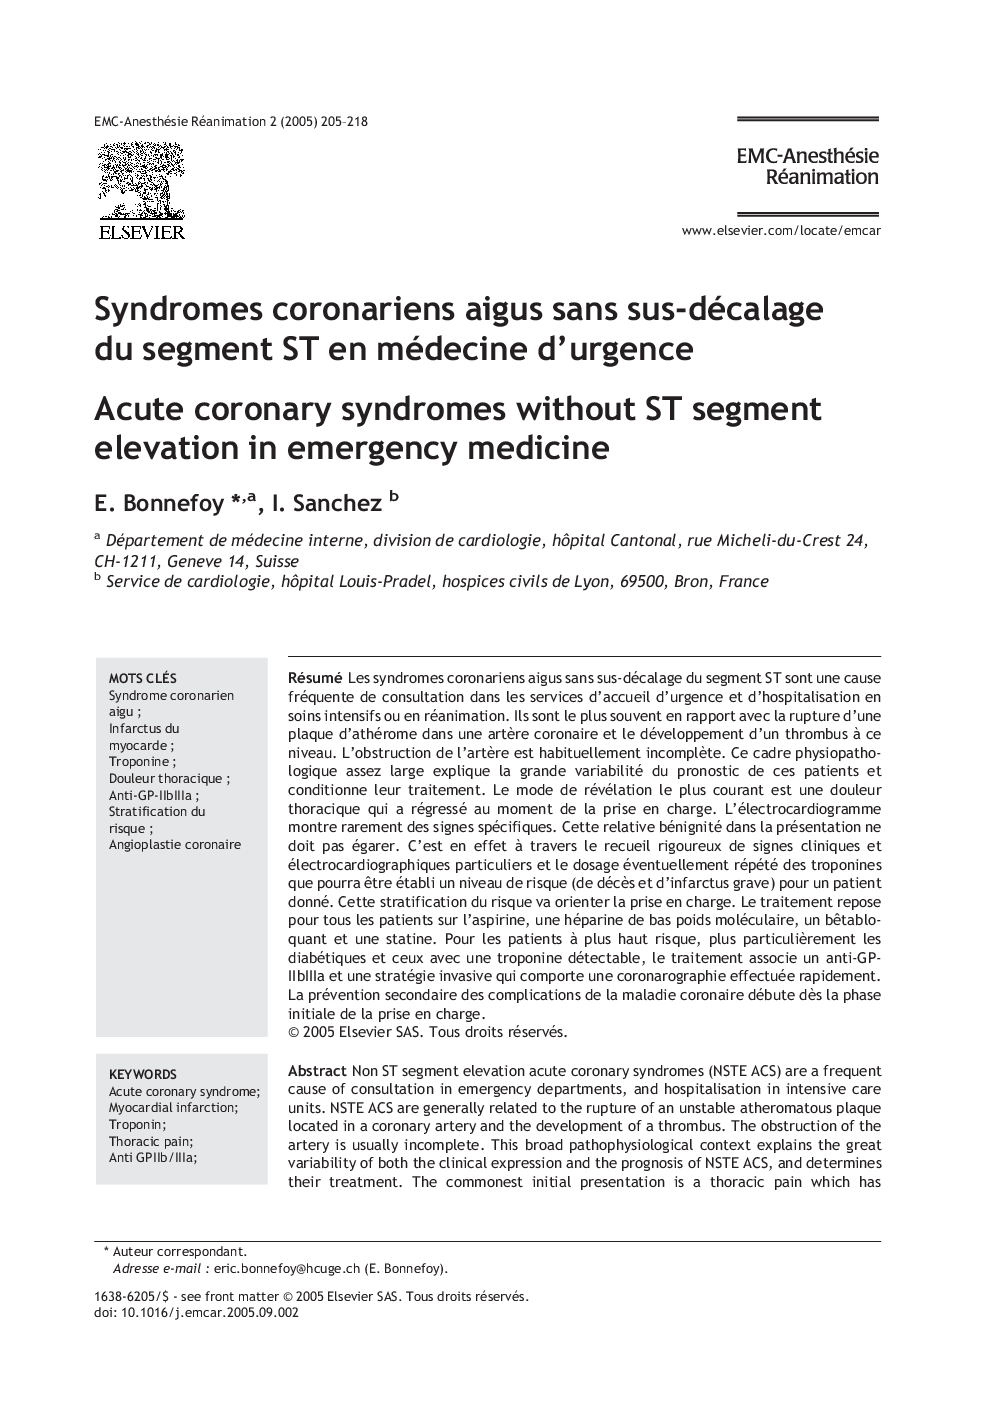 Syndromes coronariens aigus sans sus-décalage du segment ST en médecine d'urgence